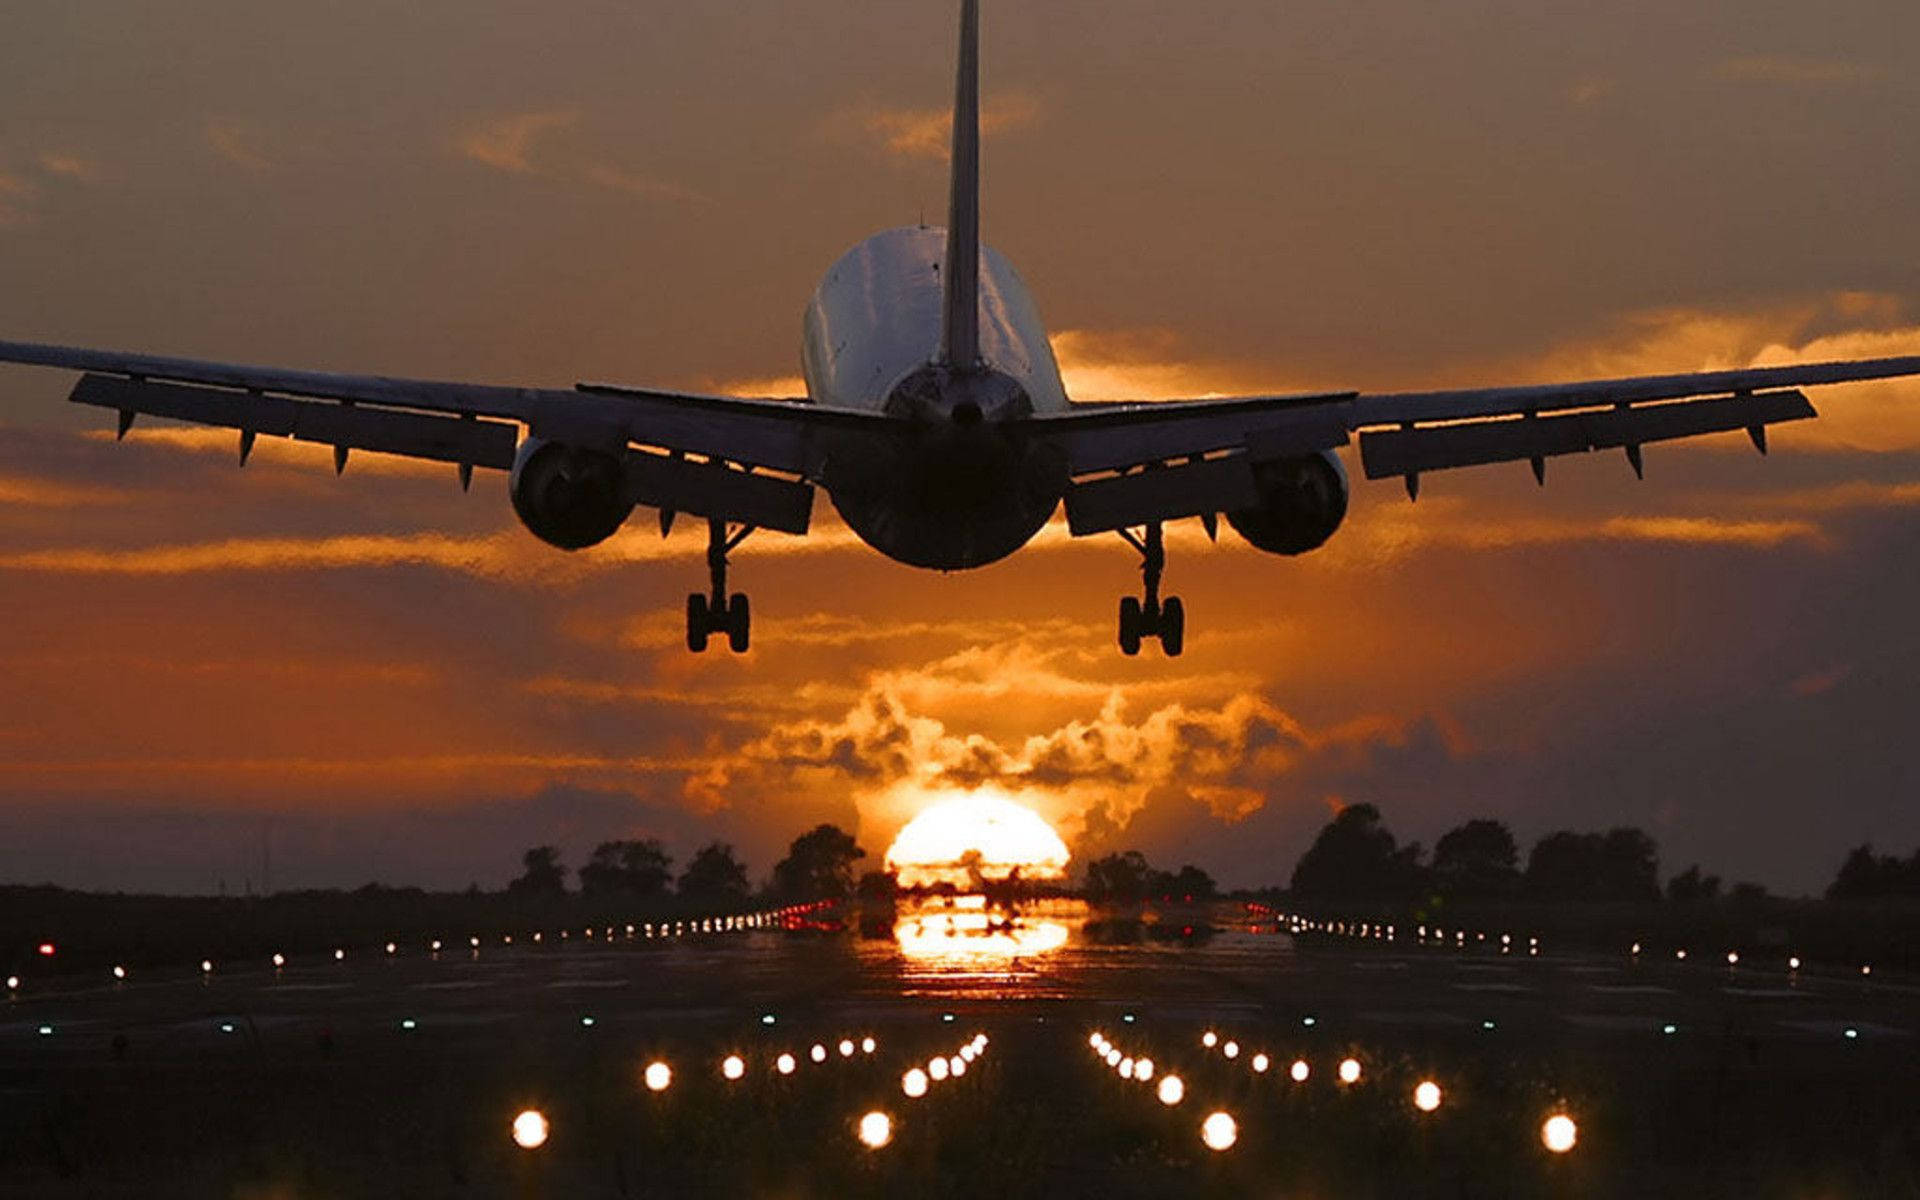 Sunset Landing Airplane